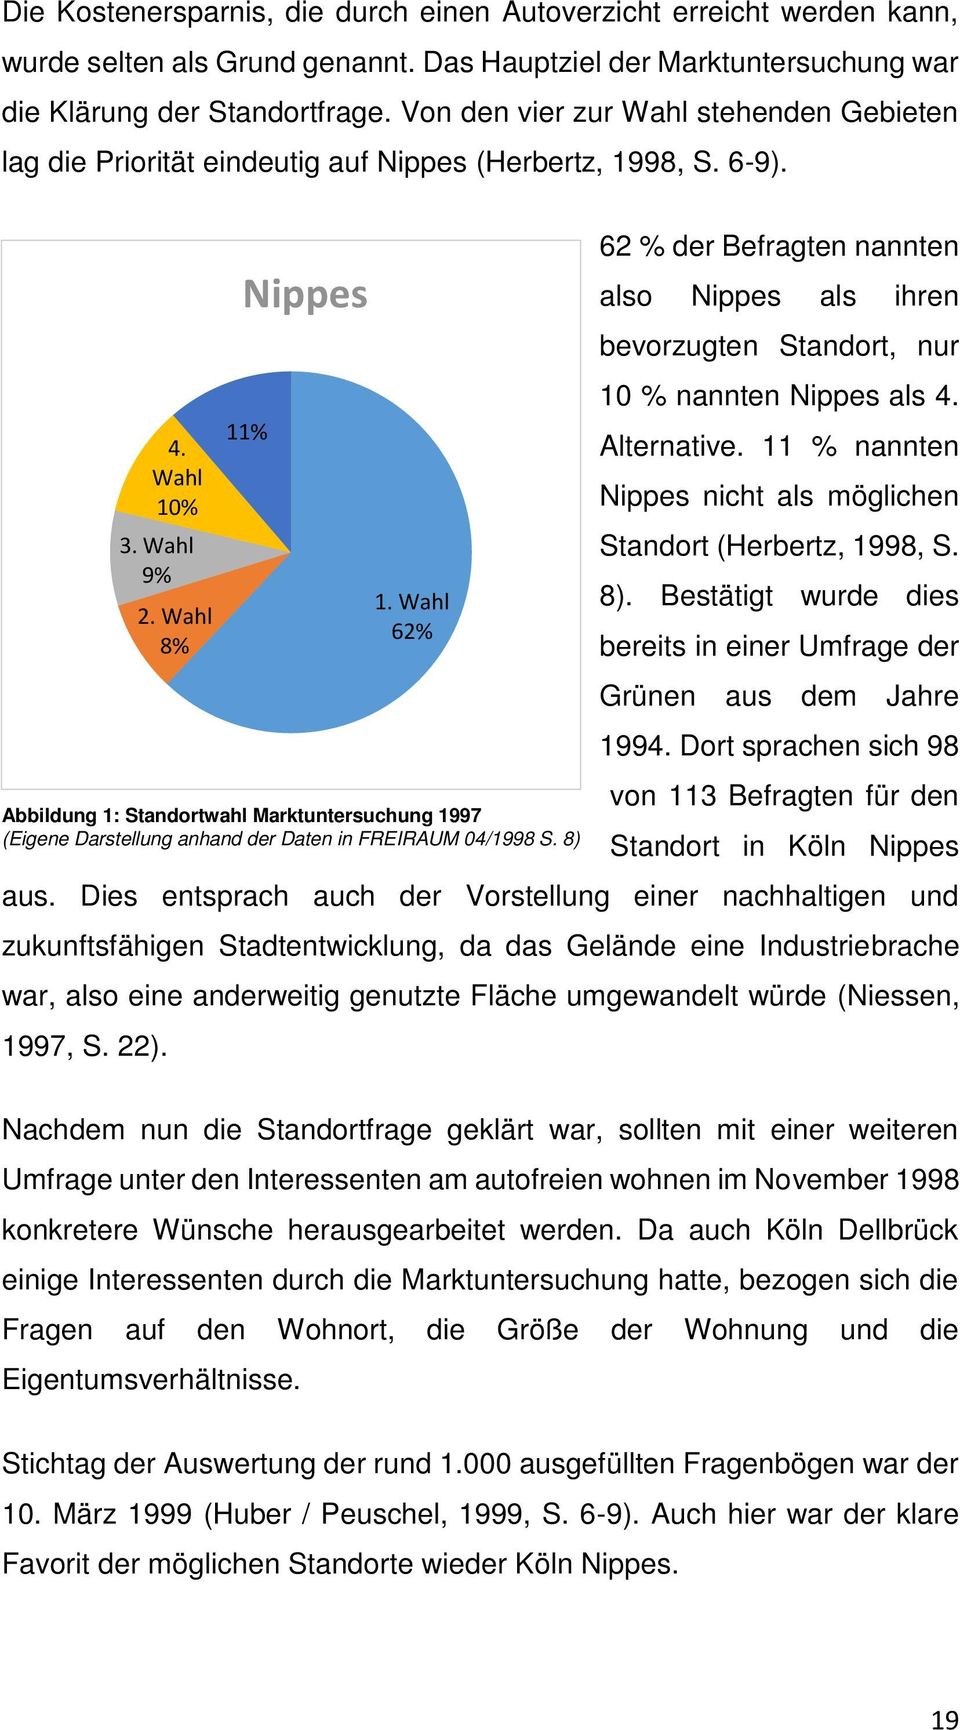 62 % der Befragten nannten also Nippes als ihren bevorzugten Standort, nur 10 % nannten Nippes als 4. Alternative. 11 % nannten Nippes nicht als möglichen Standort (Herbertz, 1998, S. 8).